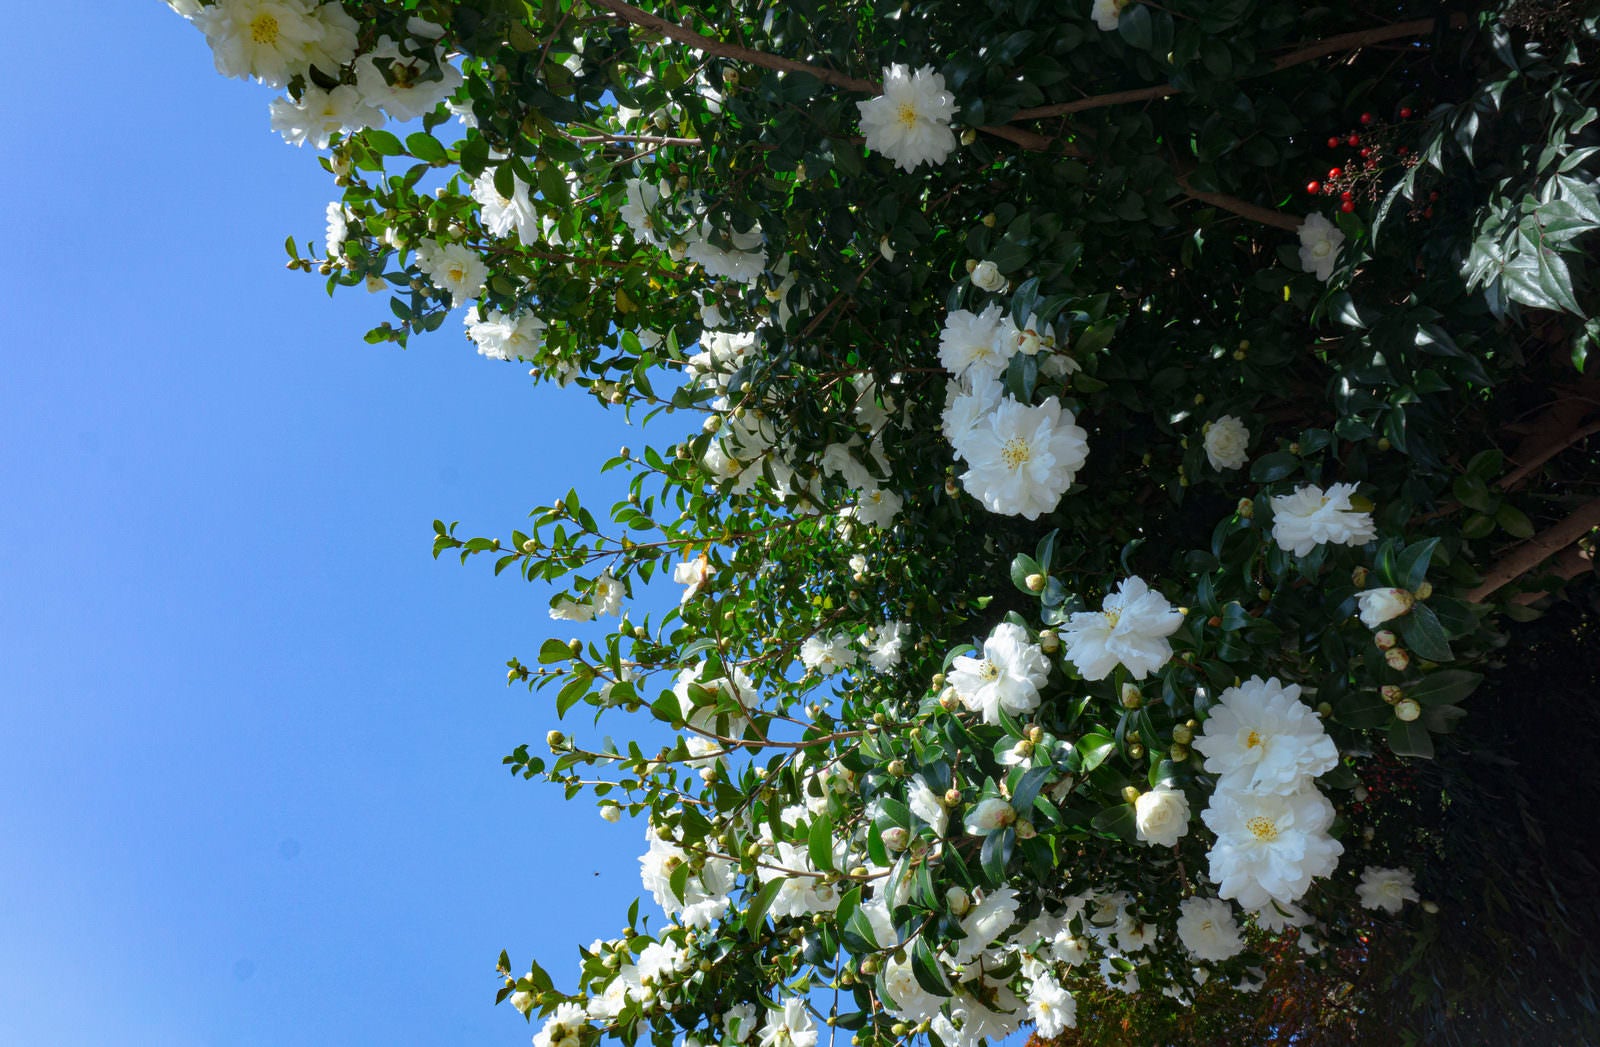 「頭上で華やかな姿を見せてくれる歩道の上に咲く白い山茶花」の写真